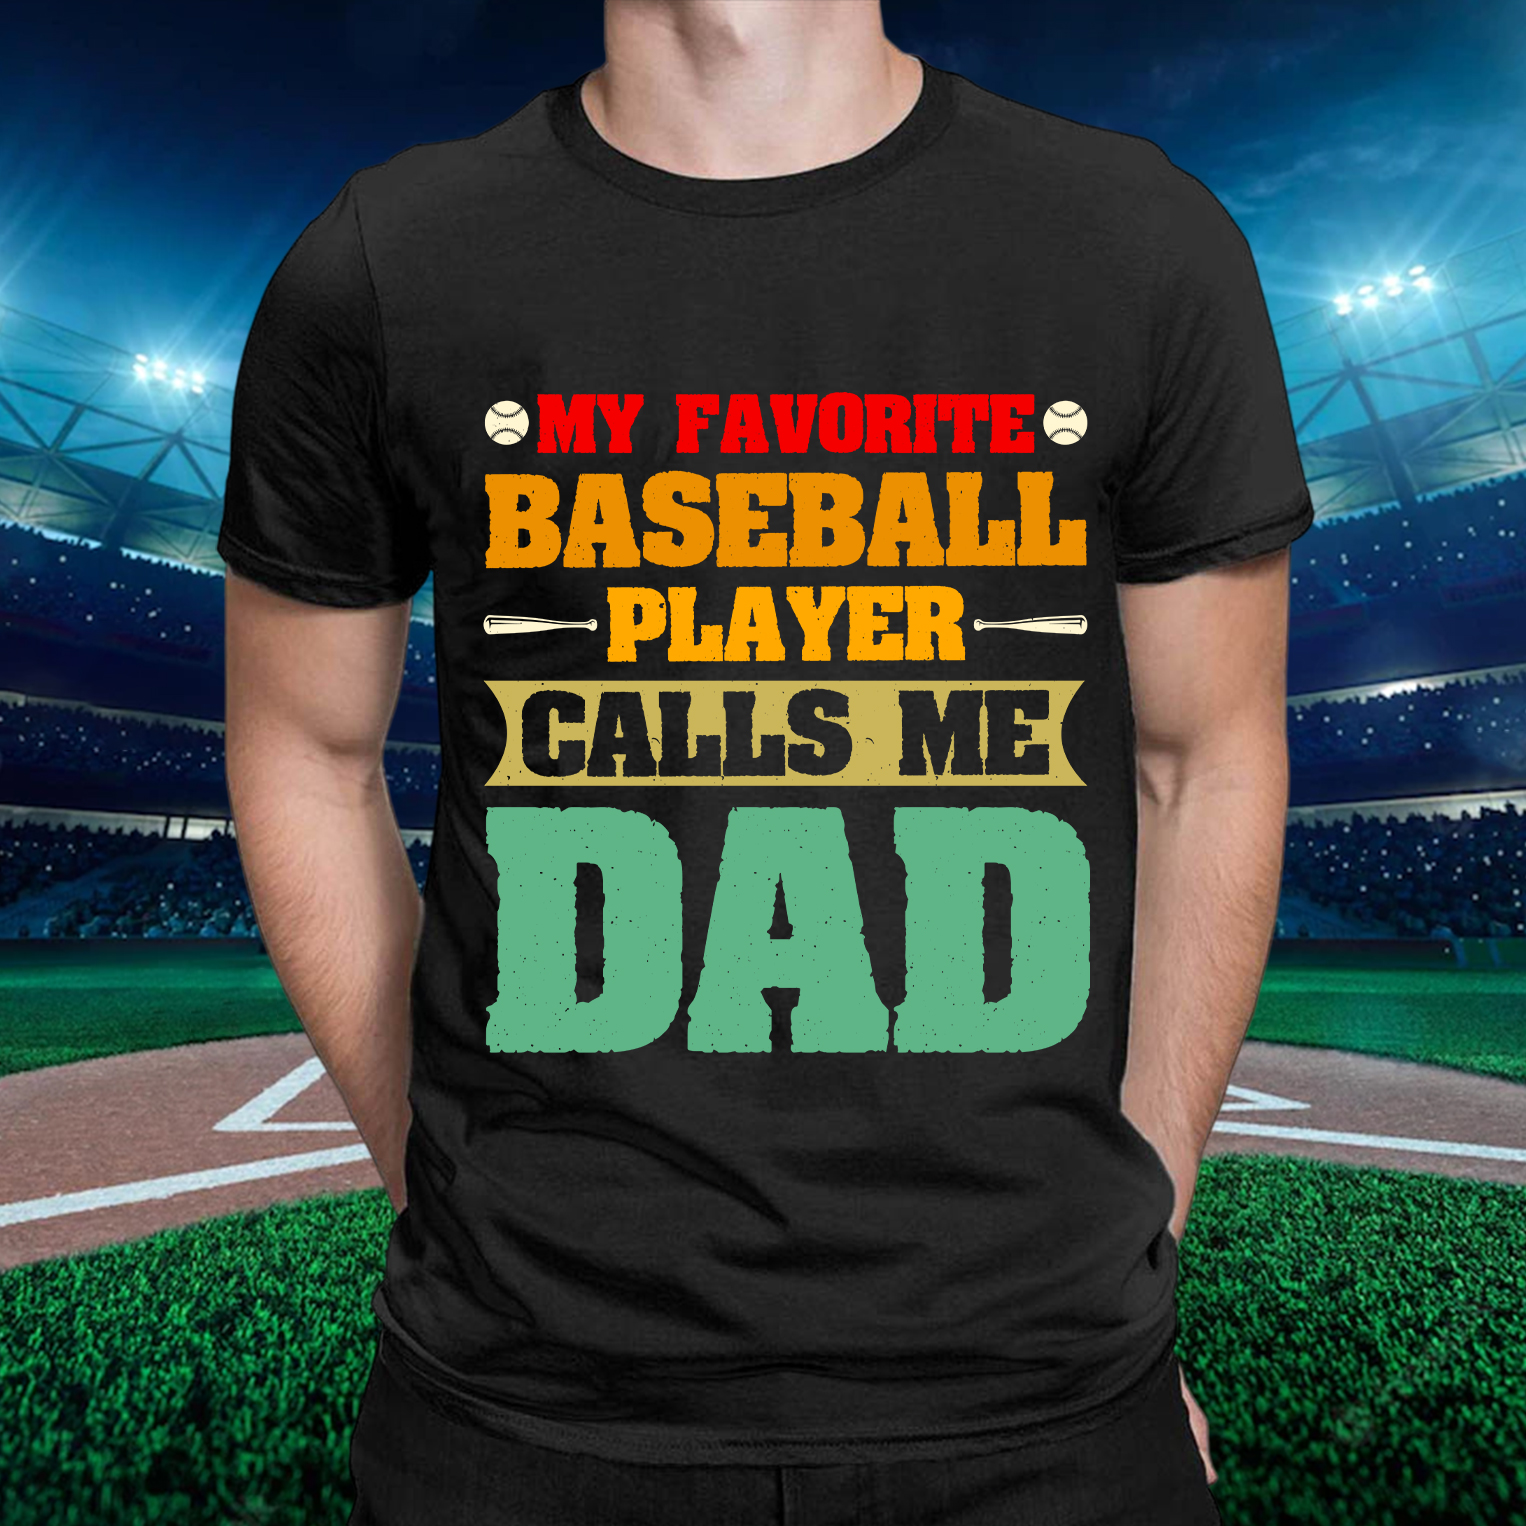 Baseball Word Art T-Shirt For Men-BSTC1311-Guru-buzz